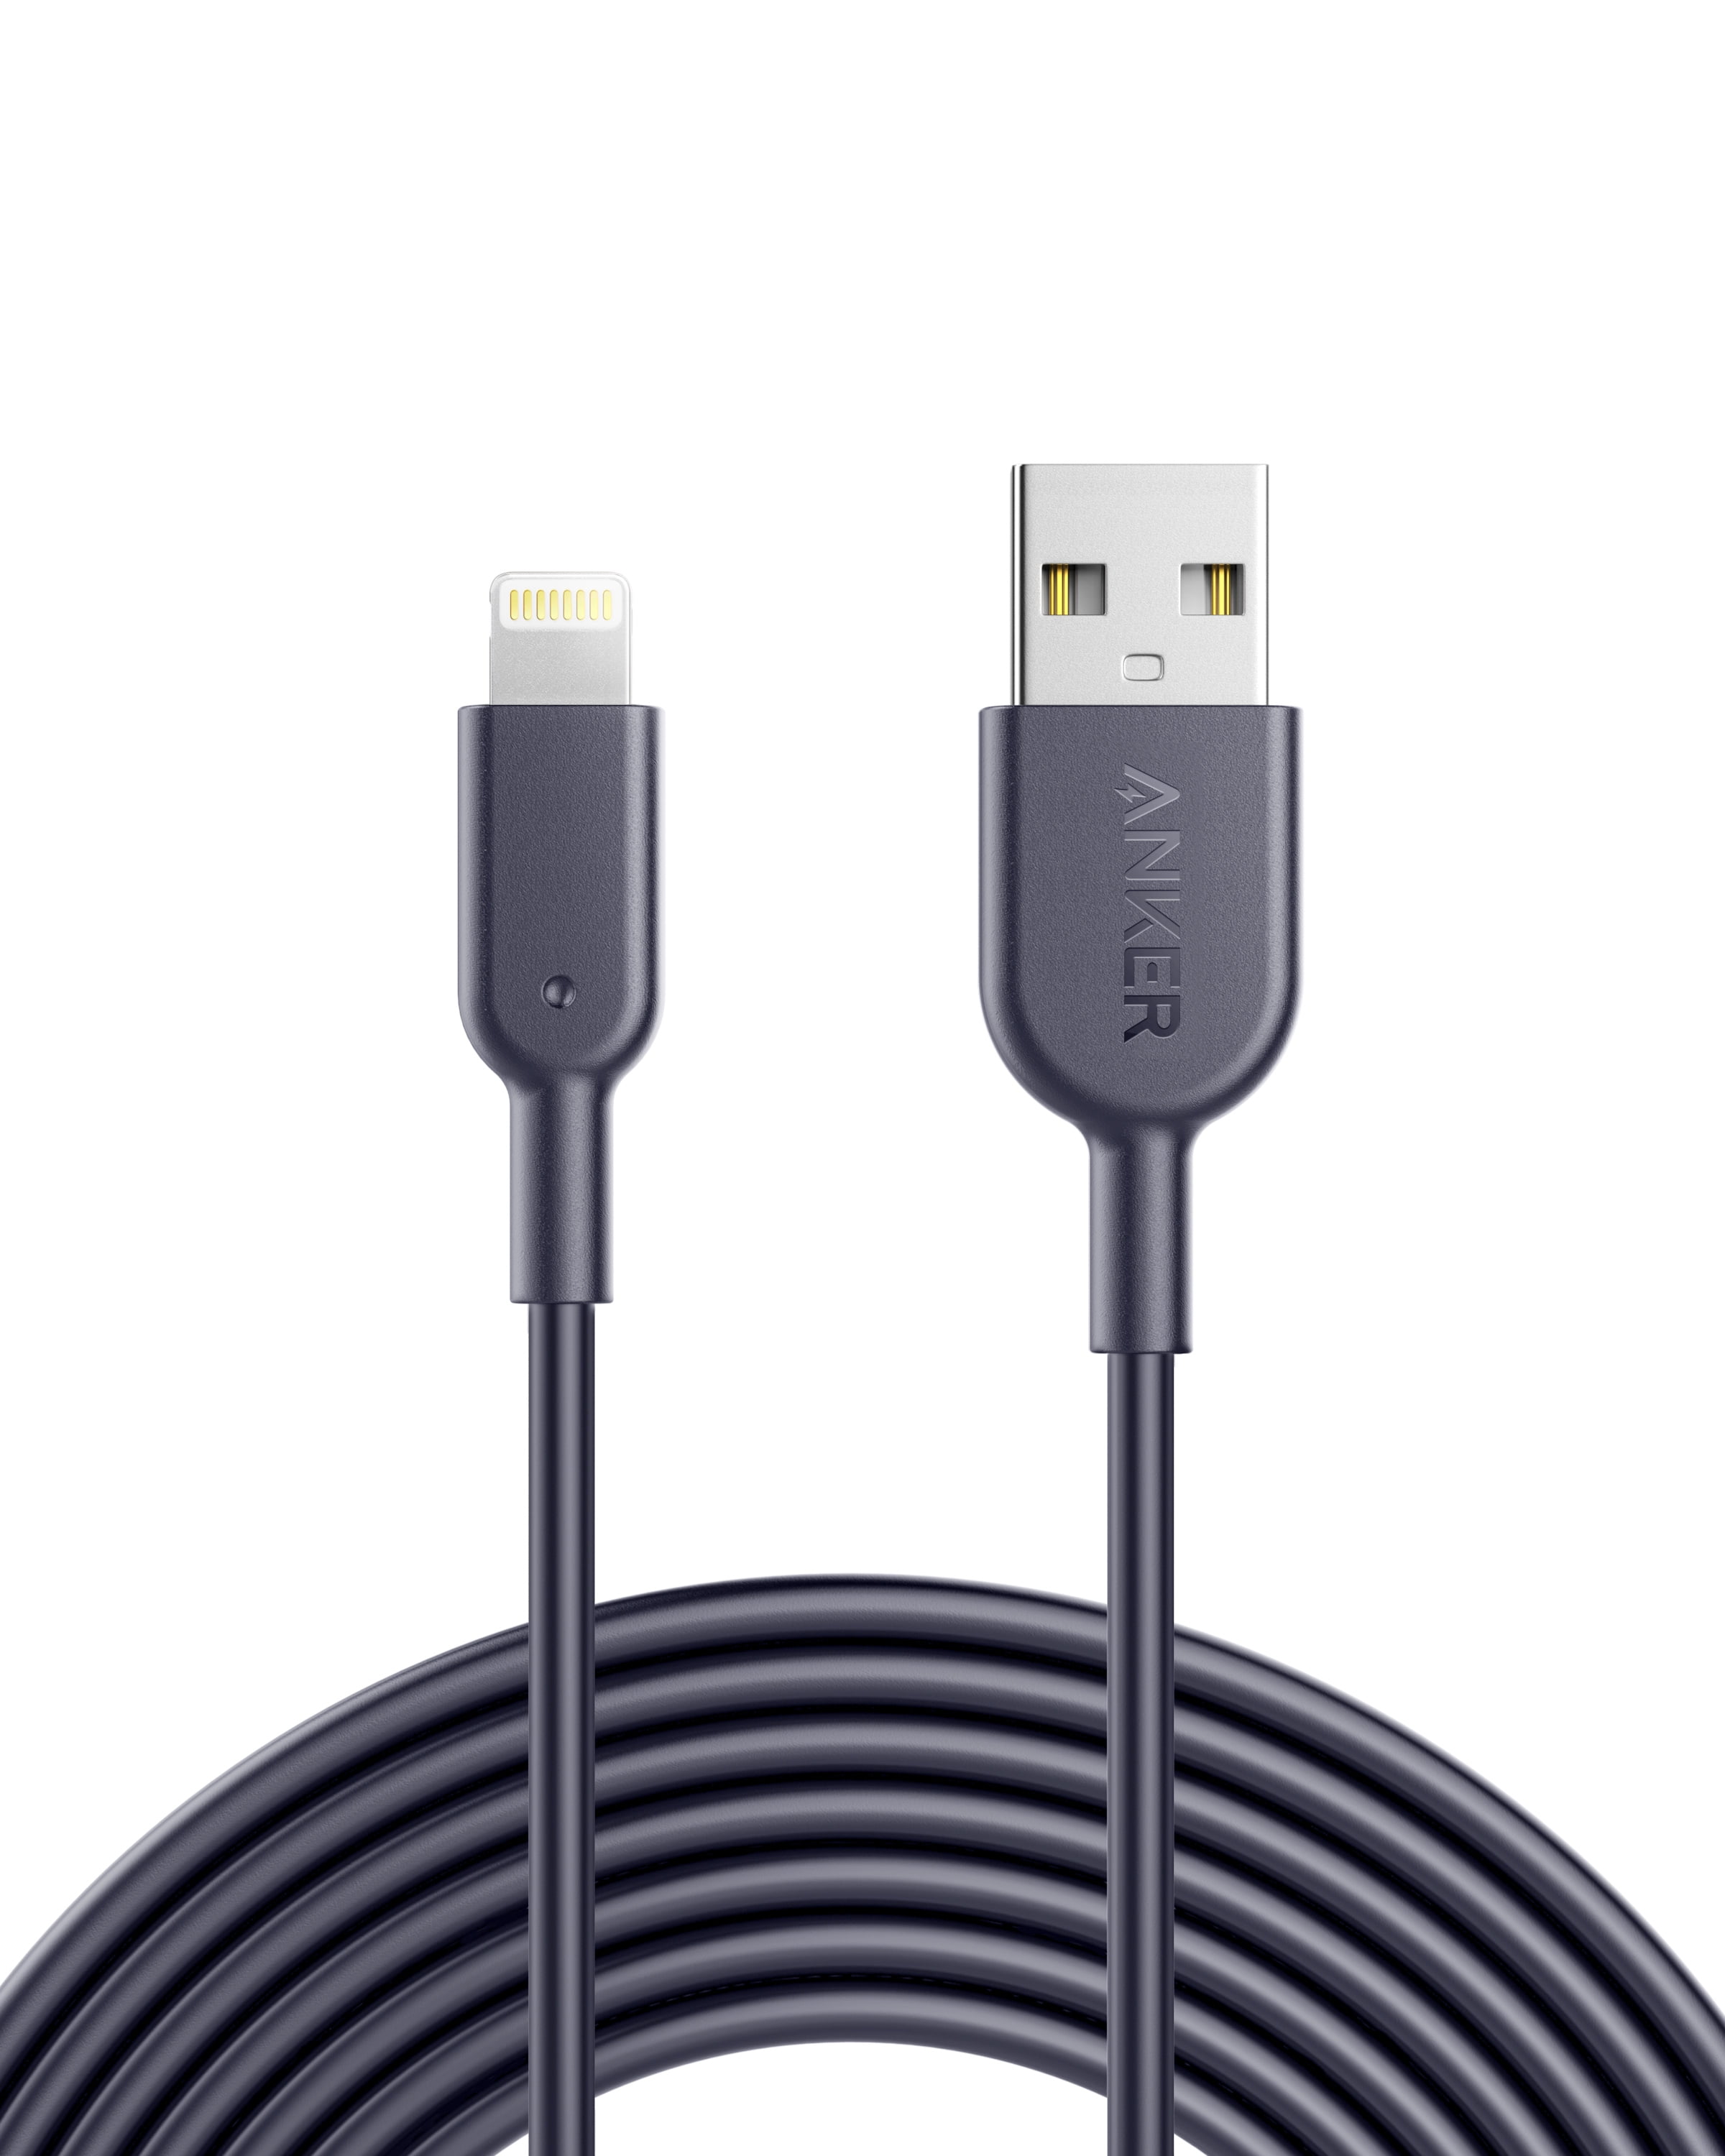 Thore - Auriculares con cable para iPhone con conector Lightning,  certificados MFi por auriculares de Apple, micrófono intrauditivo con cable  y